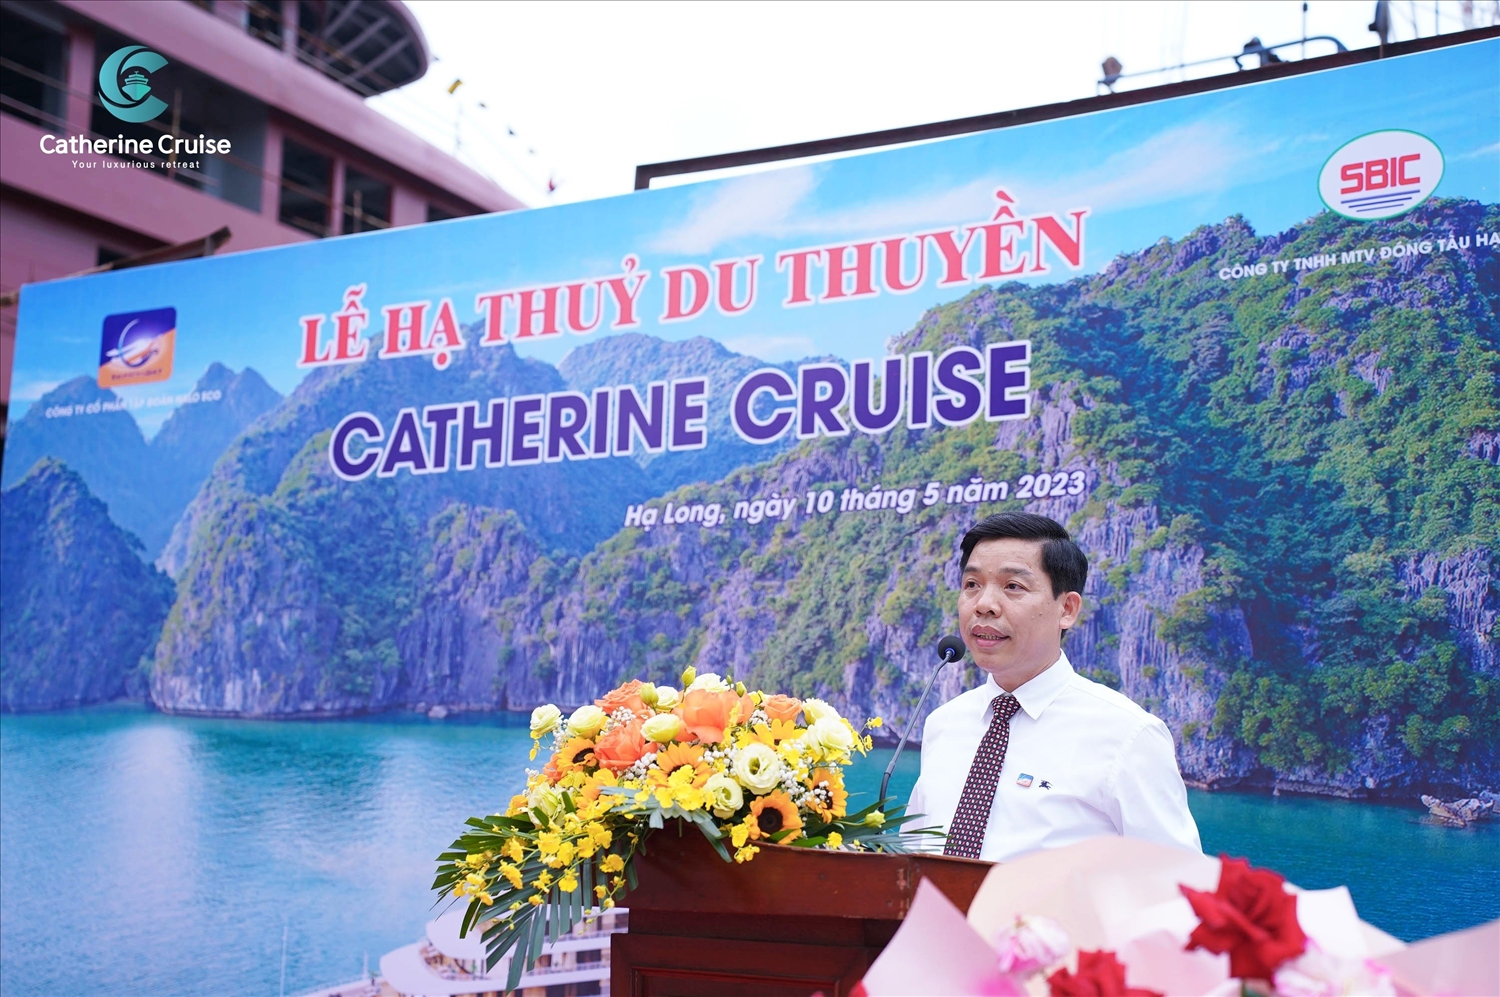 Ông Nguyễn Quốc Hoàn – Chủ tịch HĐQT Công ty Cổ phần Tập đoàn HALO ECO phát biểu tại Lễ hạ thủy.